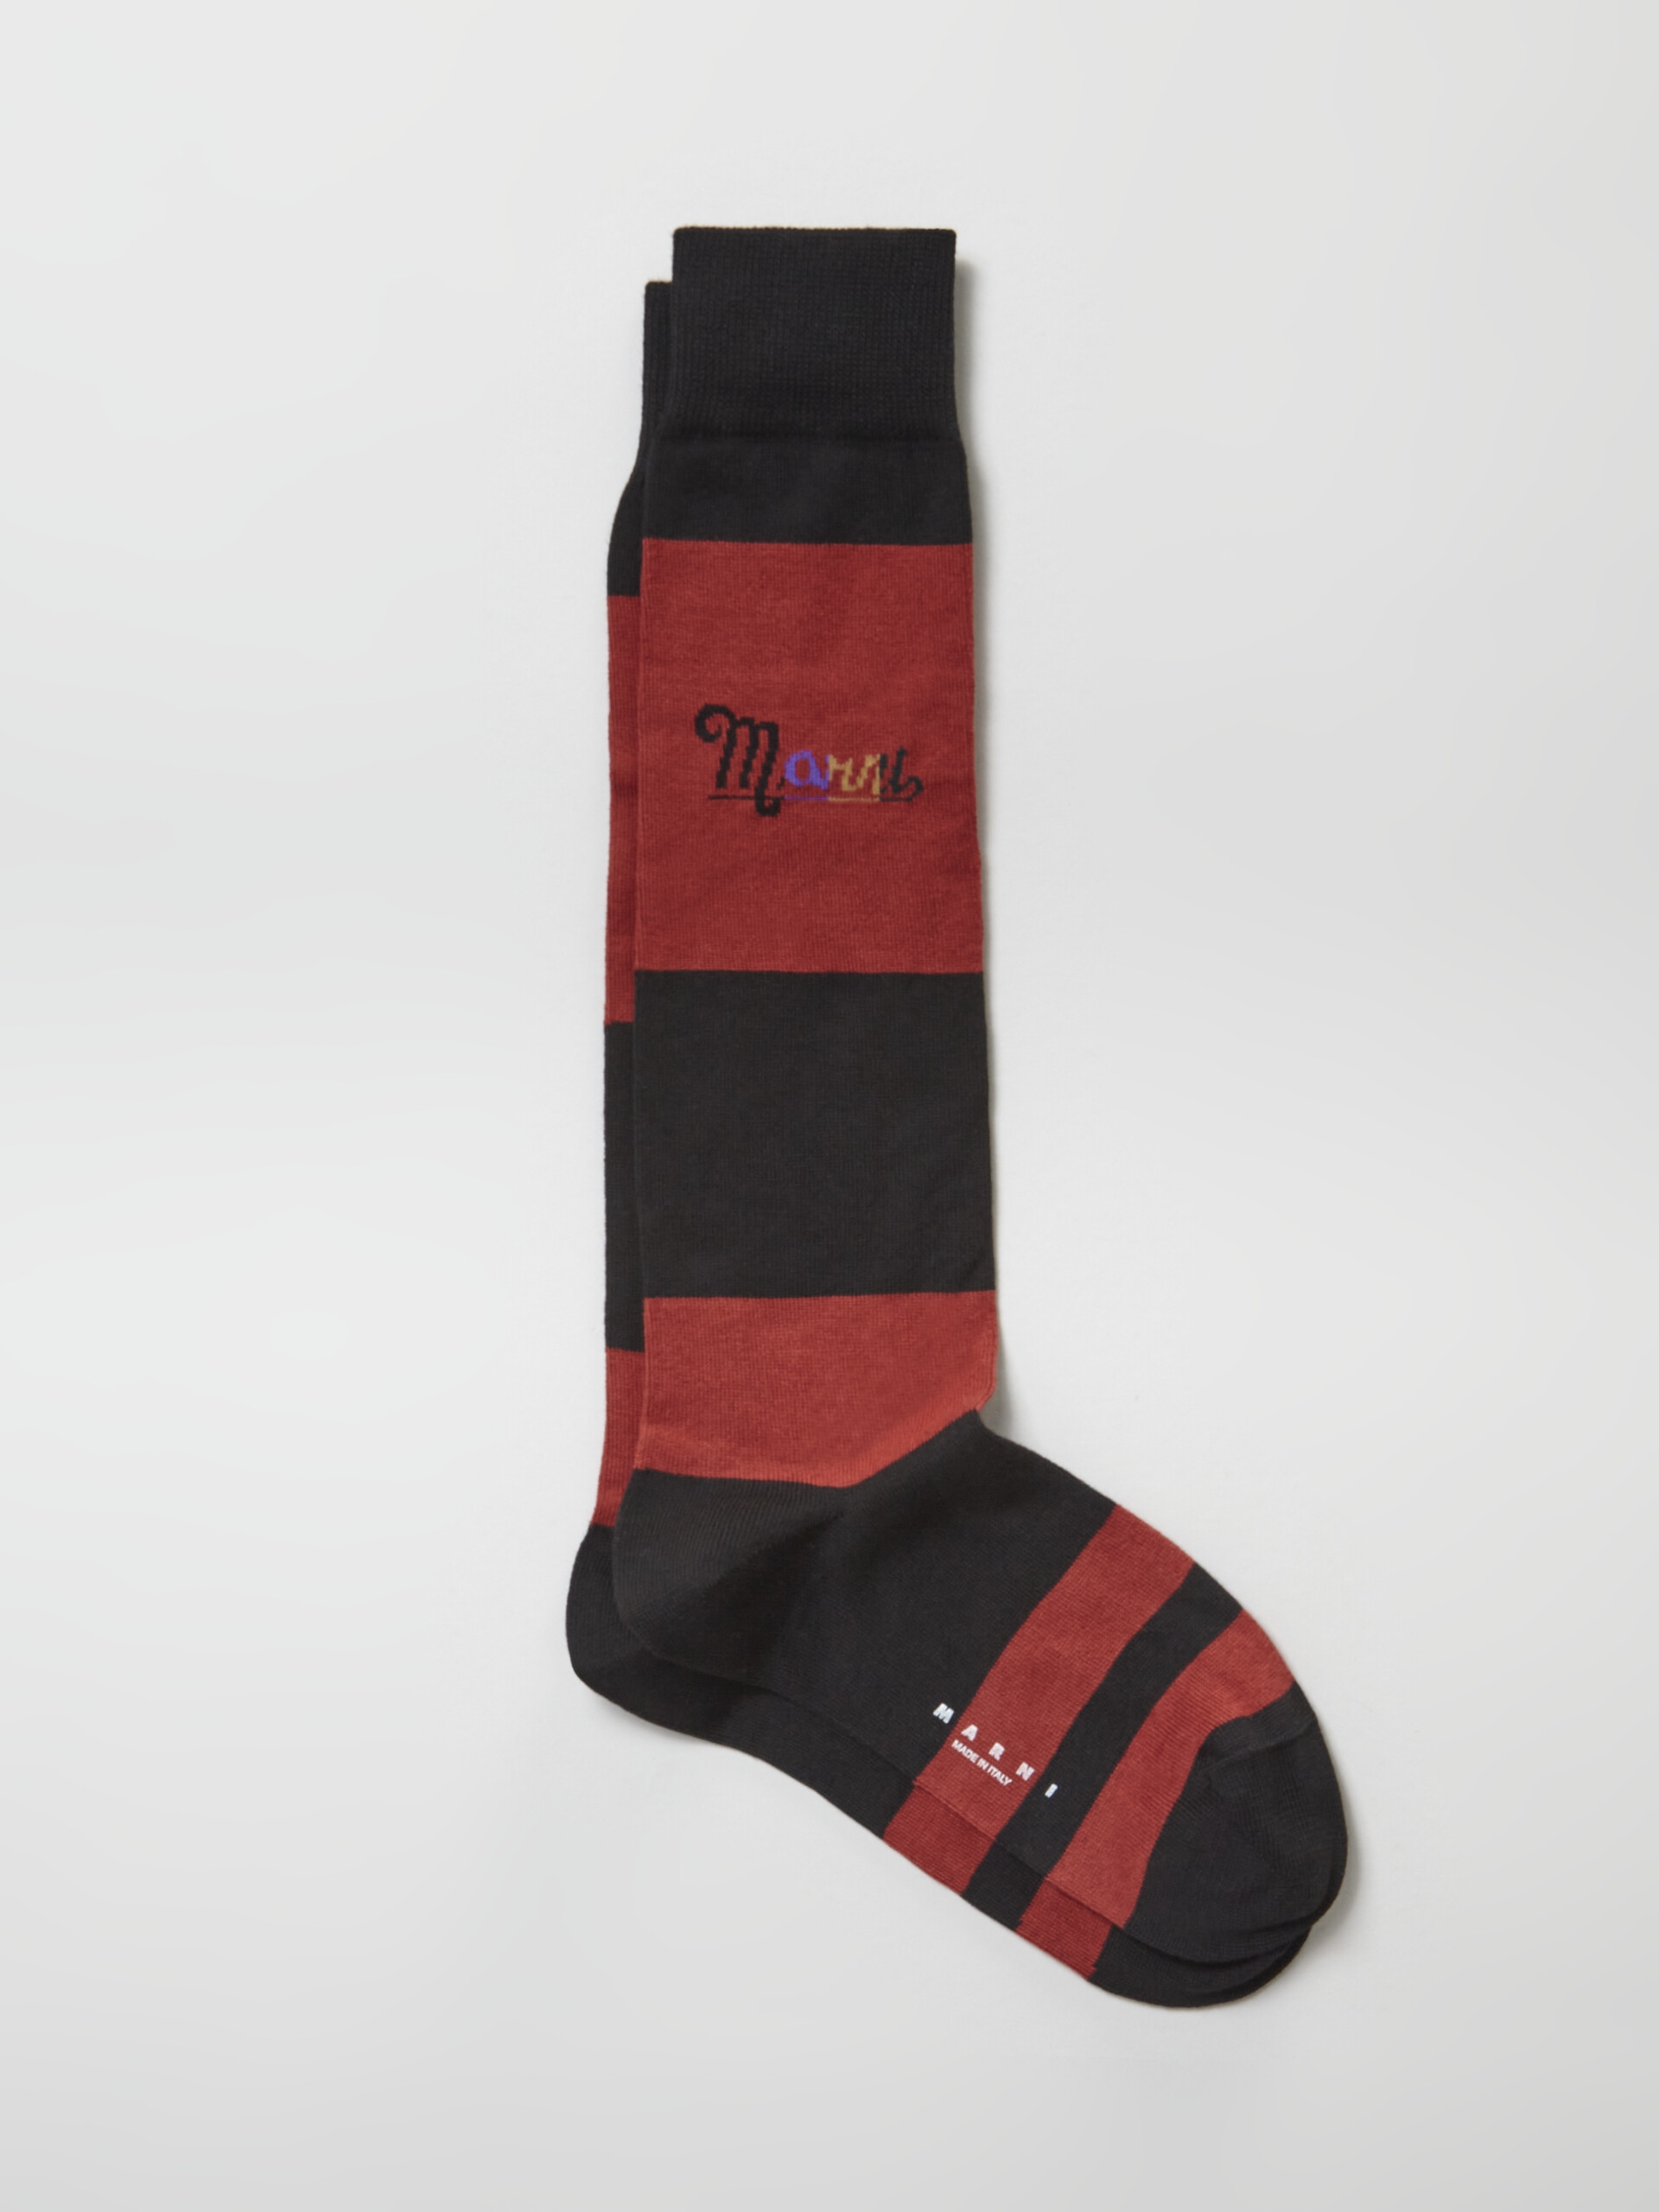 Calza in cotone rigato con logo intarsio arcobaleno nero e rosso - Calze - Image 1